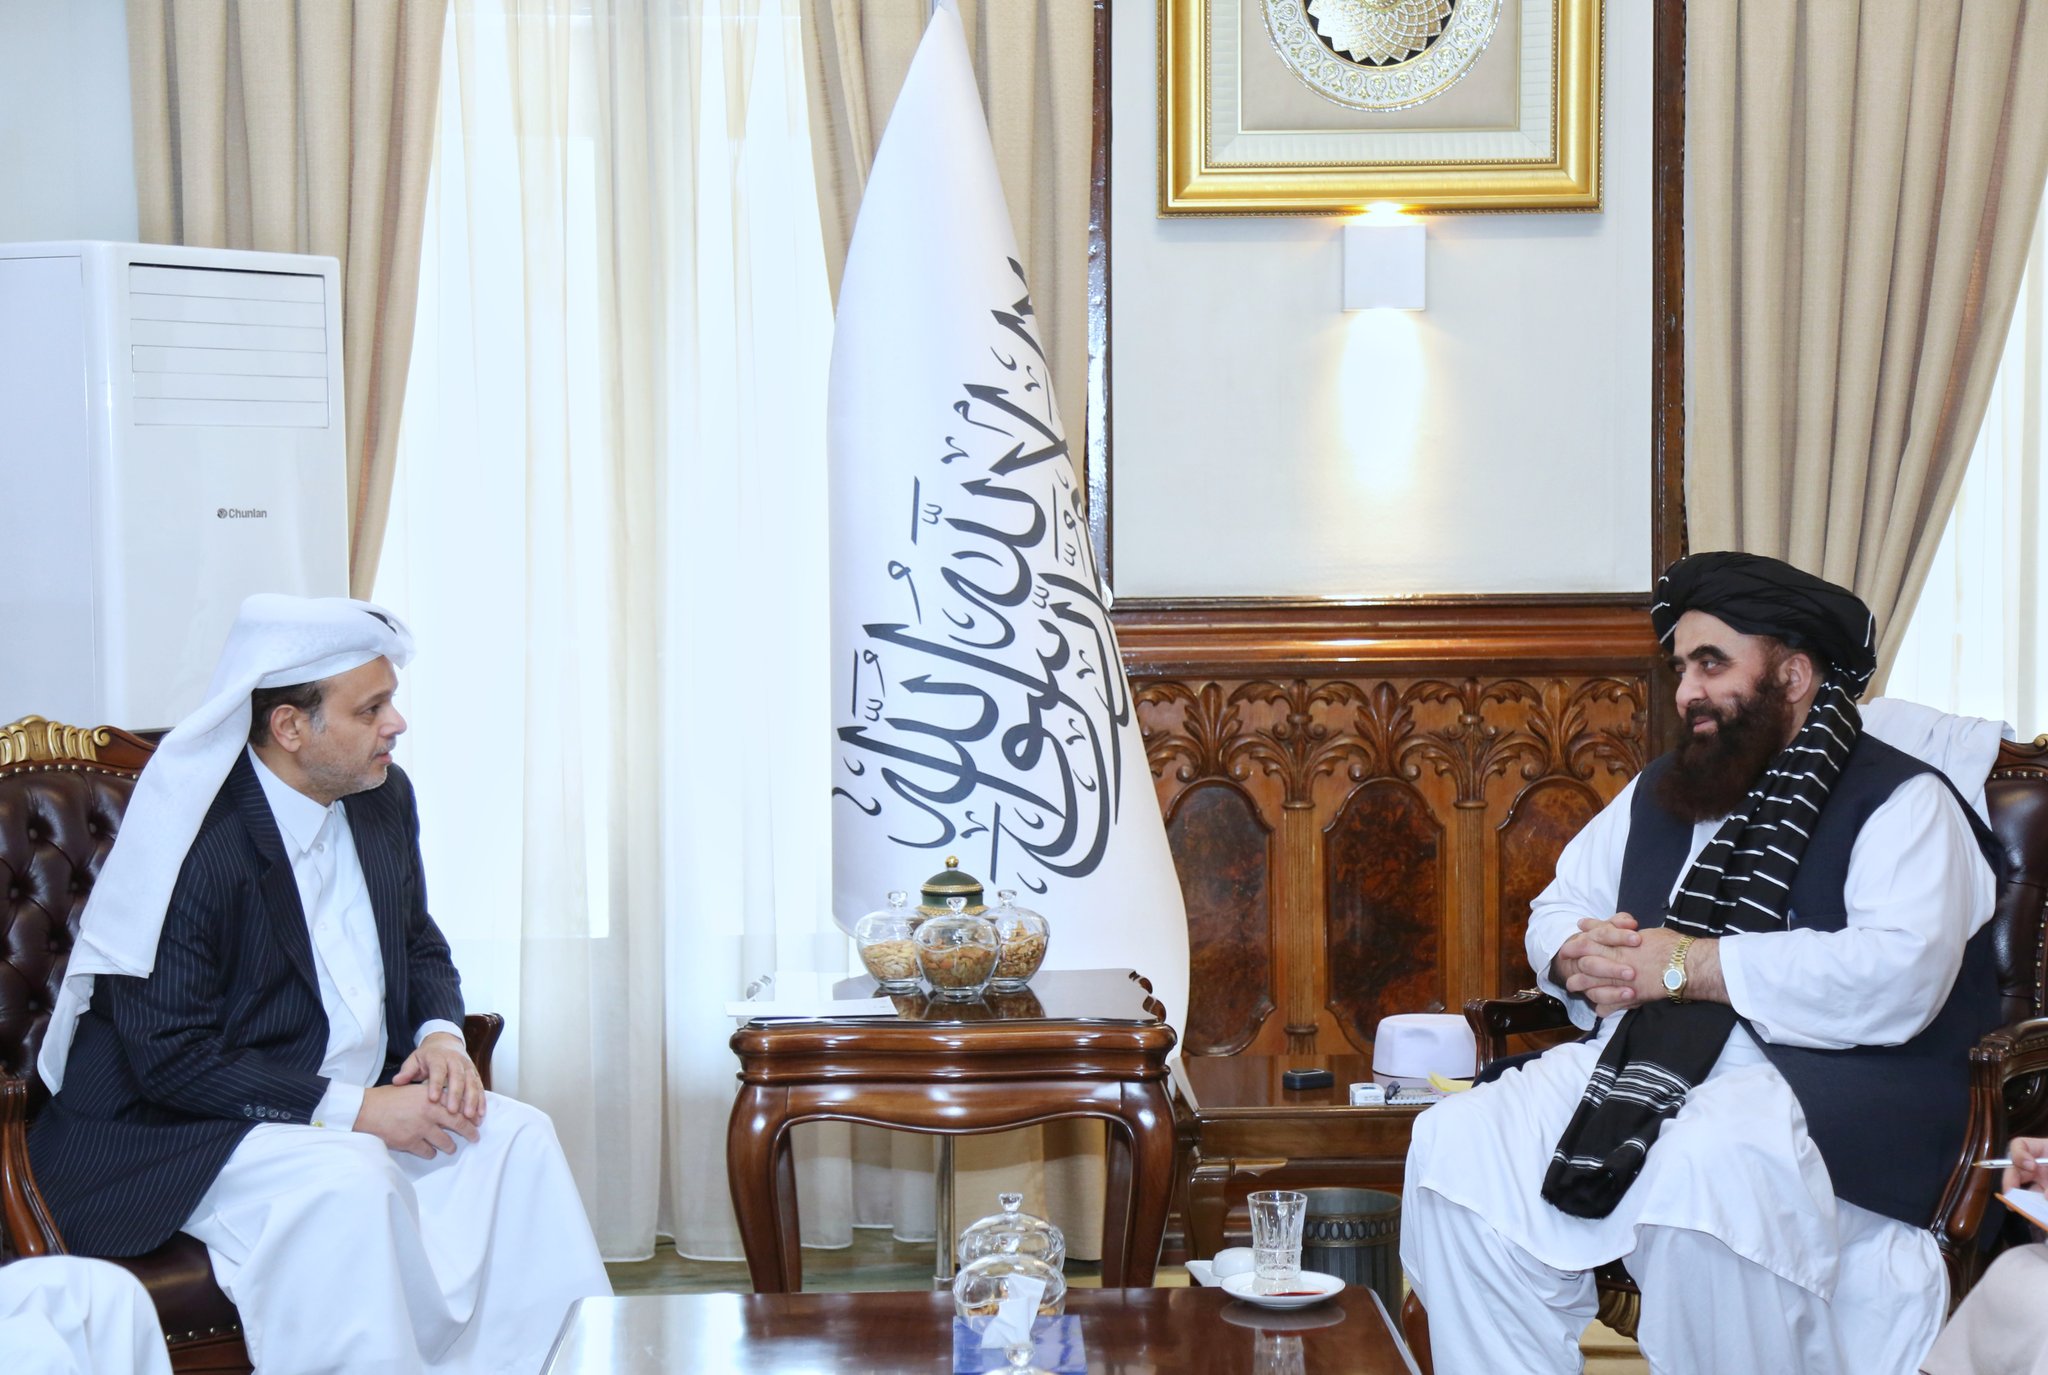 افغانستان میں قطر کے سفیر جناب سعید بن مبارک الخیارین نے وزیر خارجہ جناب مولوی امیر خان متقی سے ملاقات کی۔